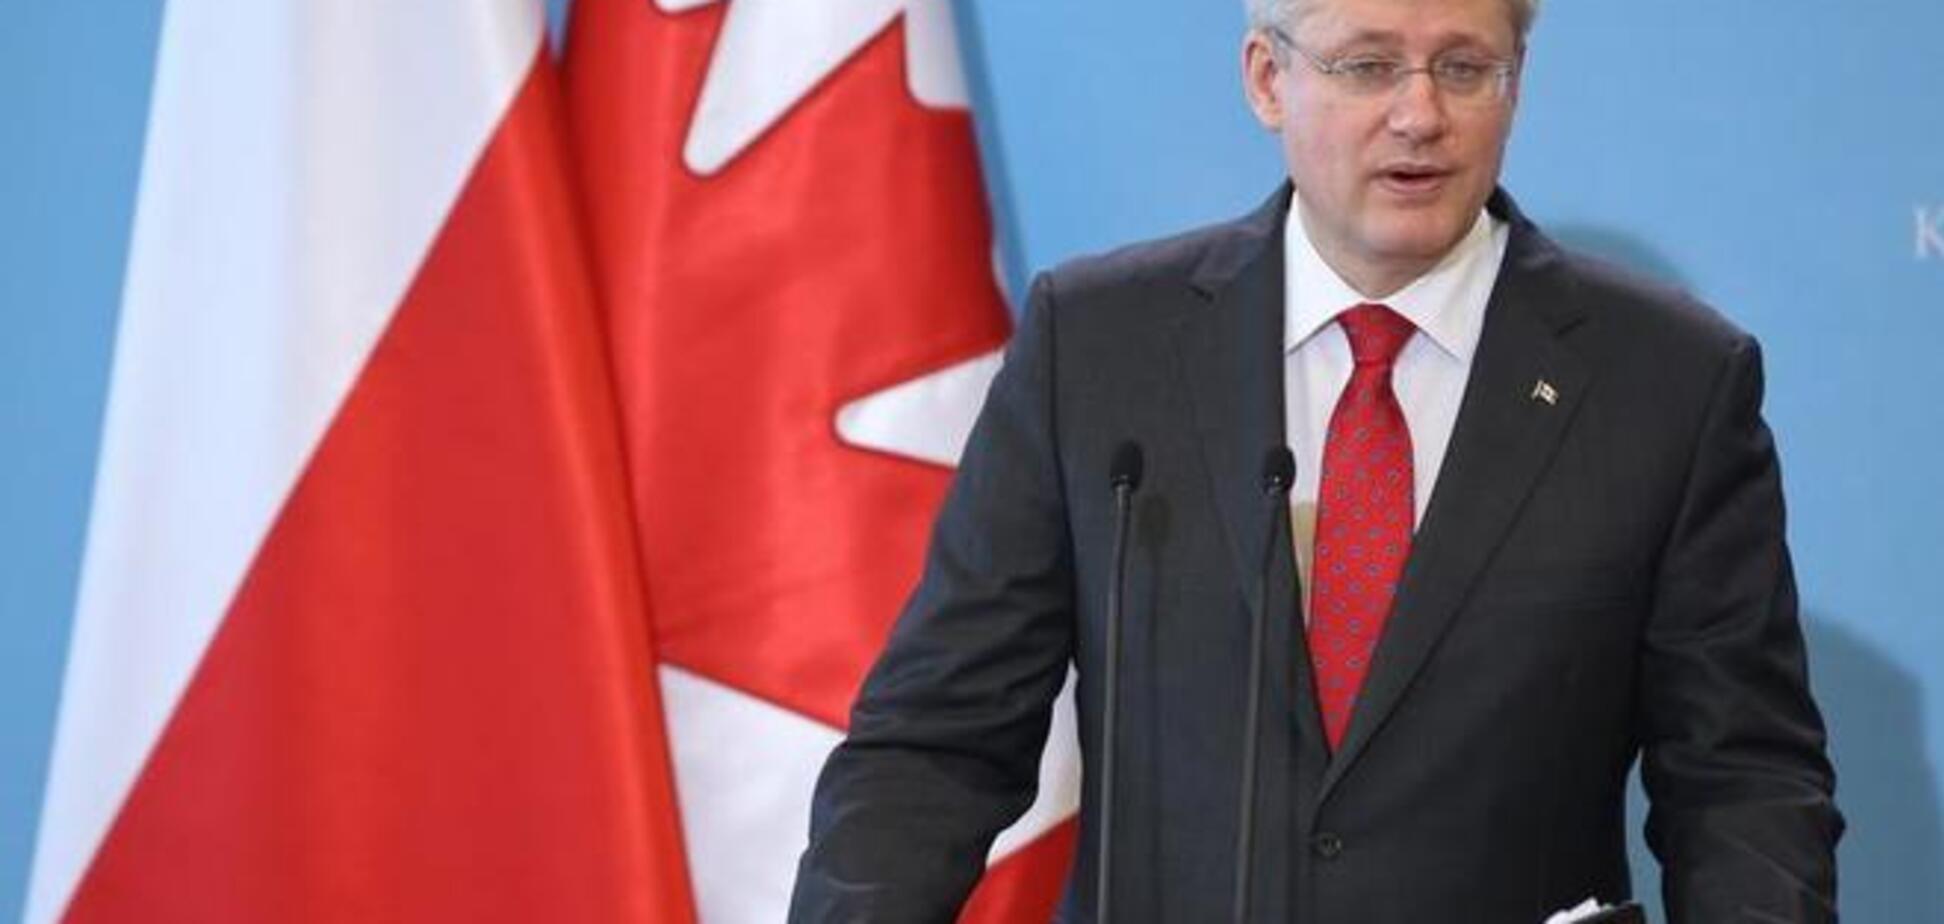 Канада никогда не признает законность оккупации Украины Россией - Харпер